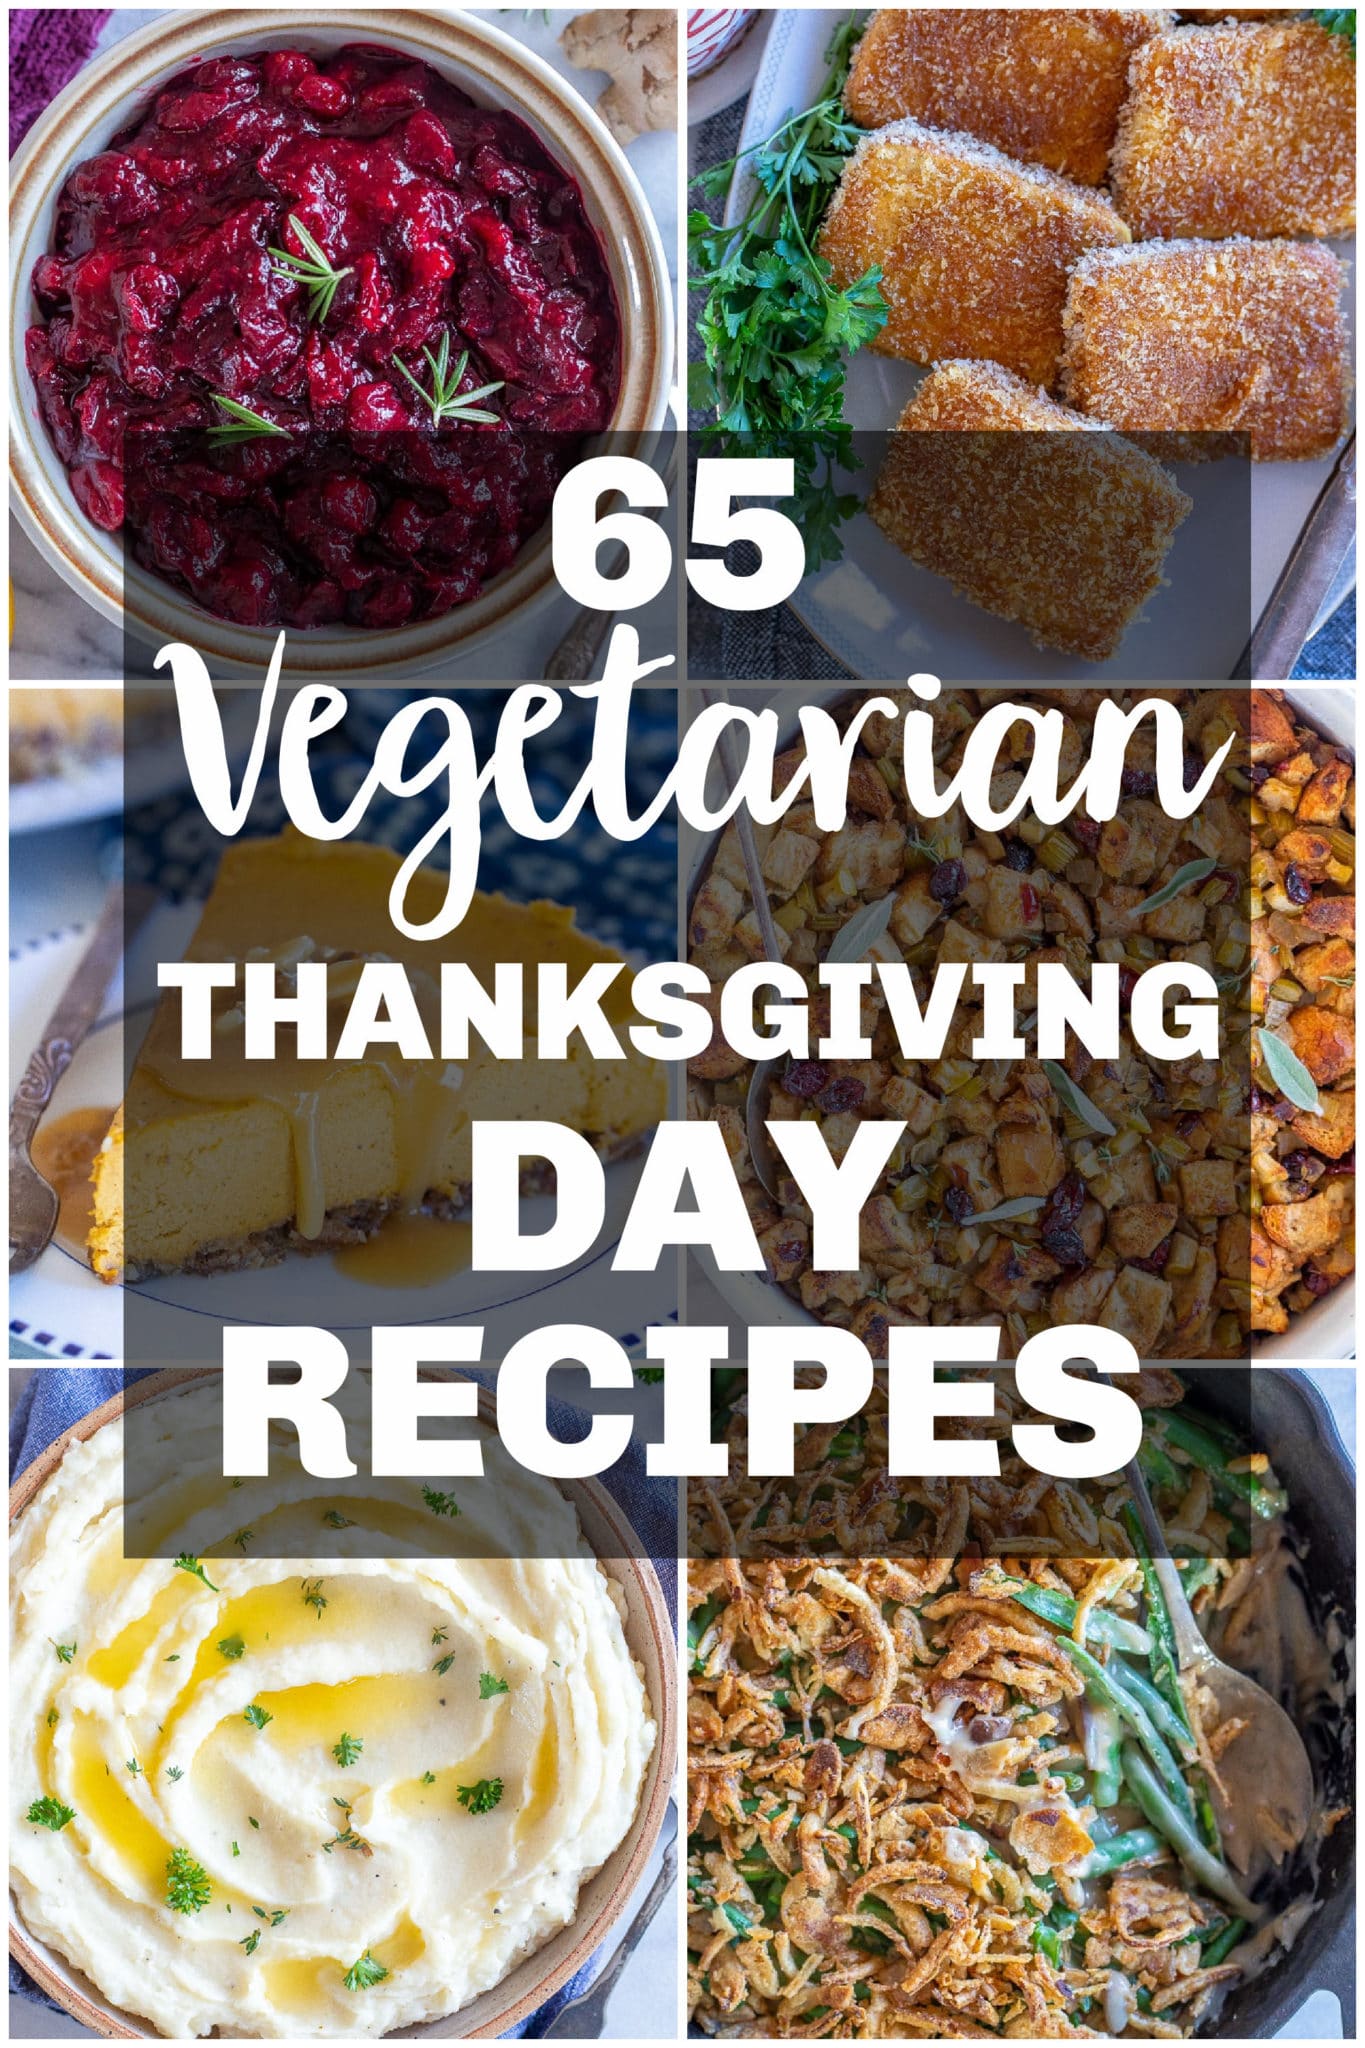 65 Vegetarian Dinner Recipes